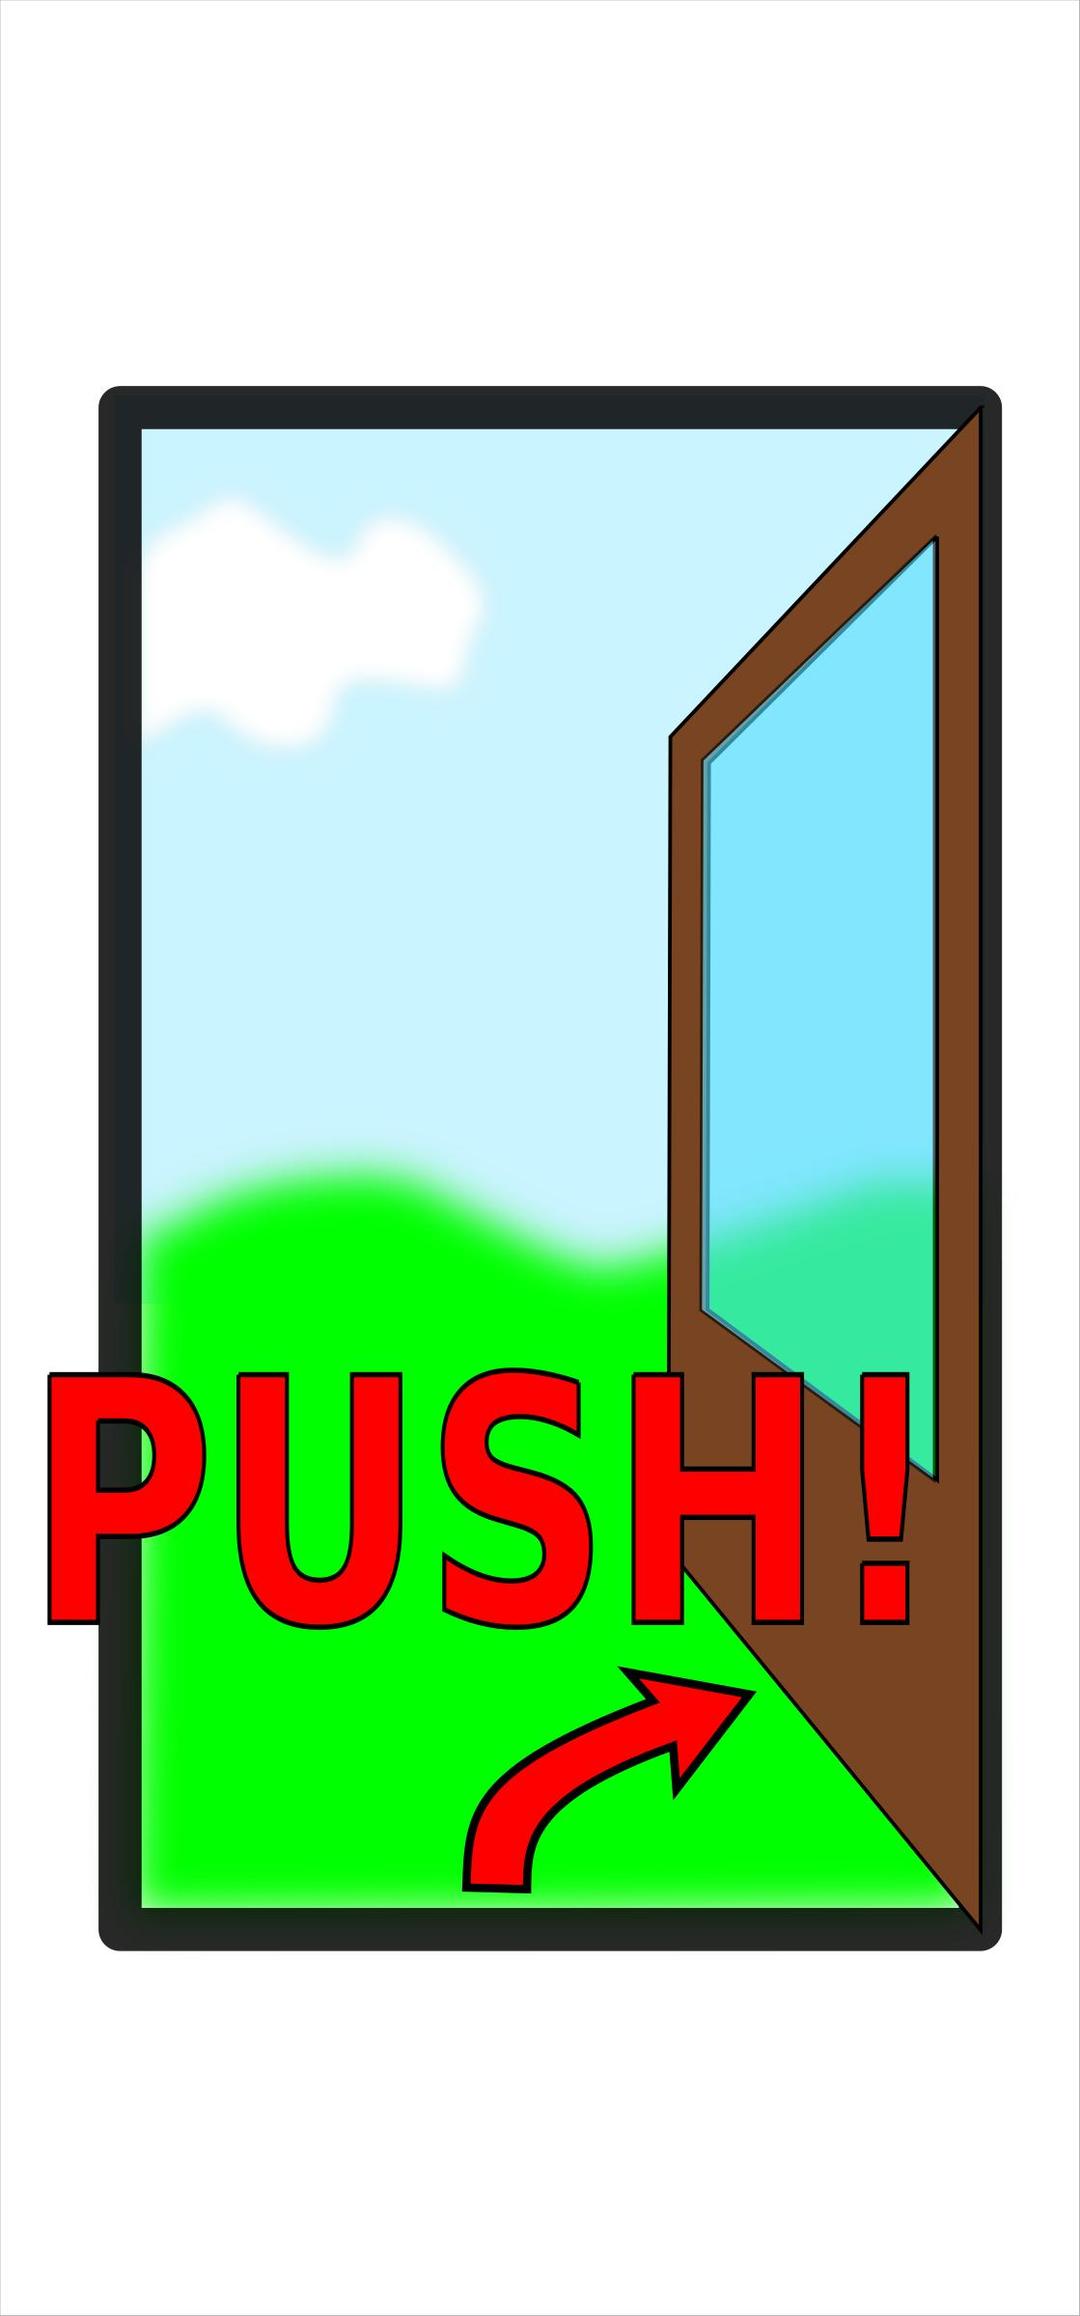 Sign "Push the door" png transparent